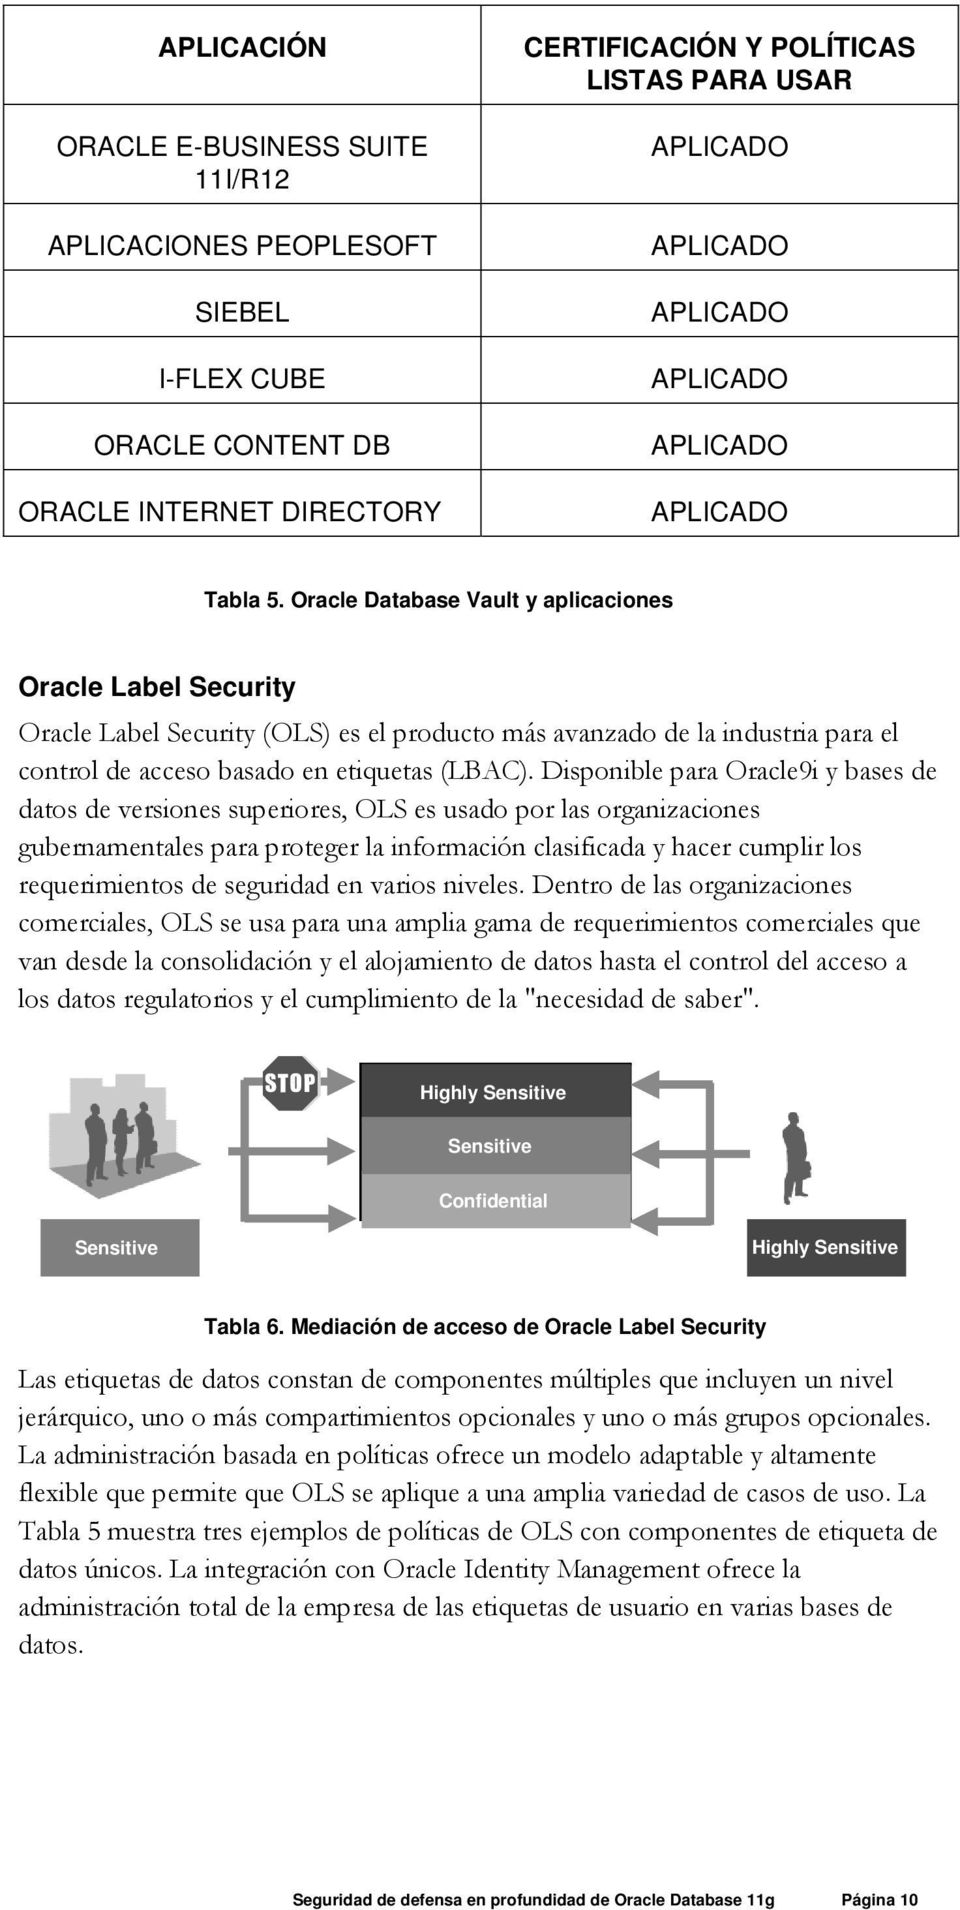 Disponible para Oracle9i y bases de datos de versiones superiores, OLS es usado por las organizaciones gubernamentales para proteger la información clasificada y hacer cumplir los requerimientos de